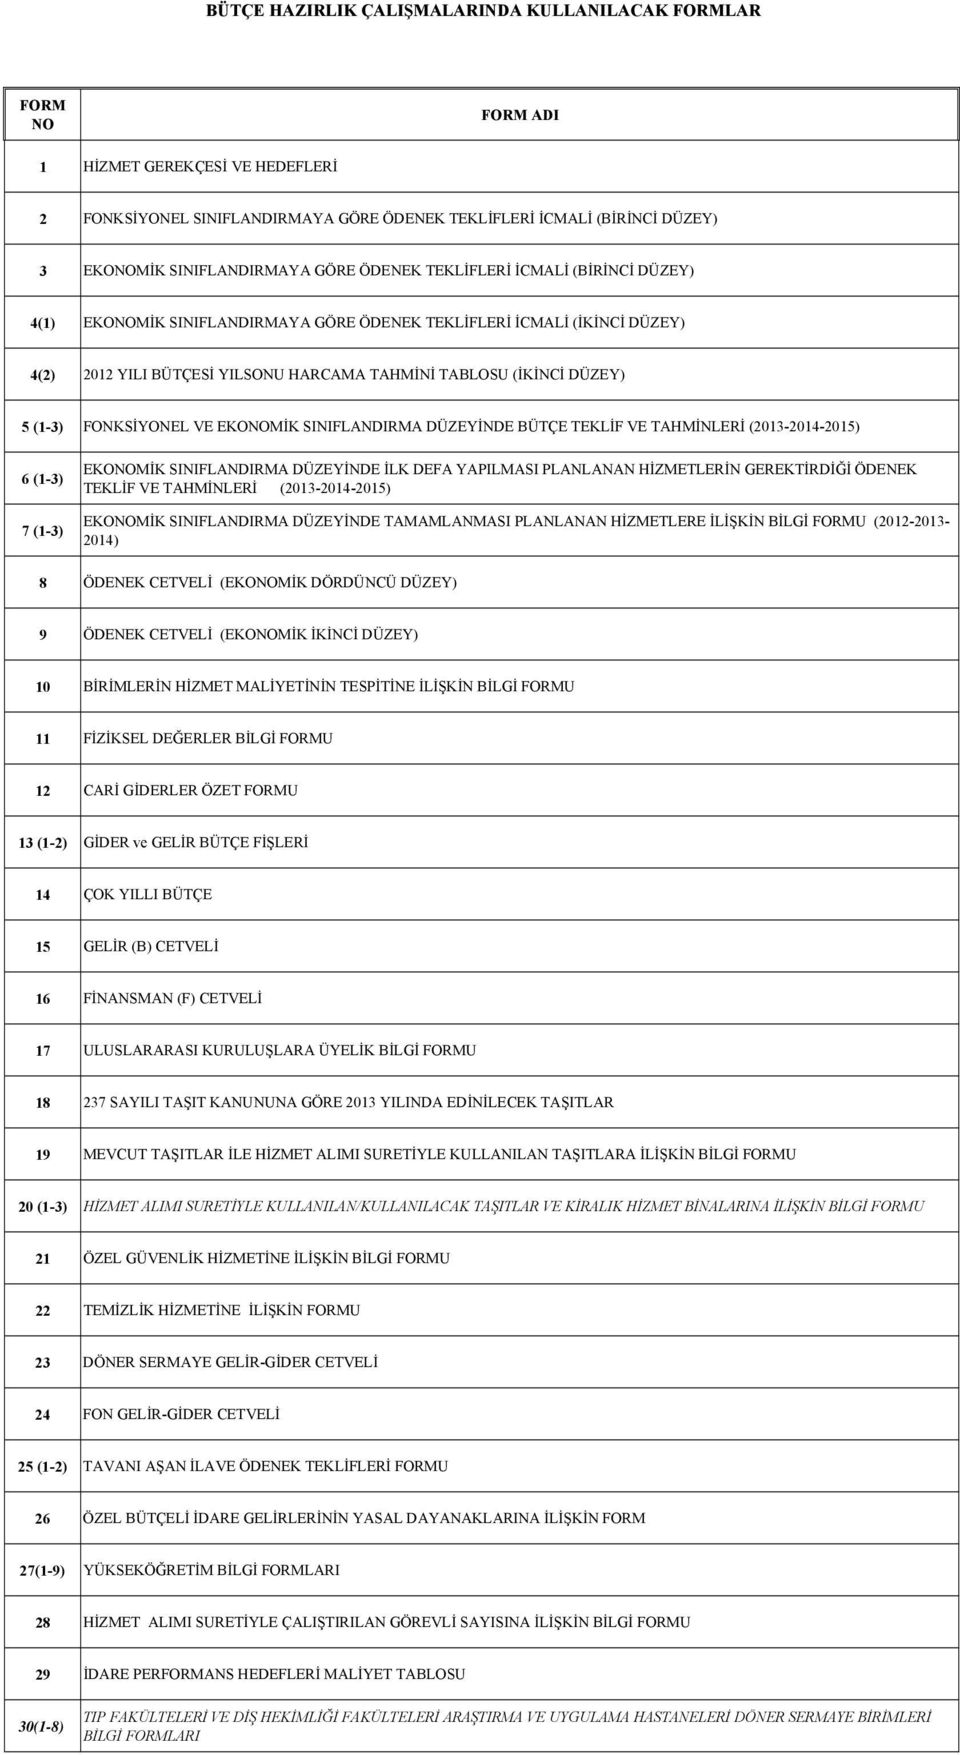 DÜZEY) 5 (1-3) FONKSİYONEL VE EKONOMİK SINIFLANDIRMA DÜZEYİNDE BÜTÇE TEKLİF VE TAHMİNLERİ (2013-2014-2015) 6 (1-3) 7 (1-3) EKONOMİK SINIFLANDIRMA DÜZEYİNDE İLK DEFA YAPILMASI PLANLANAN HİZMETLERİN